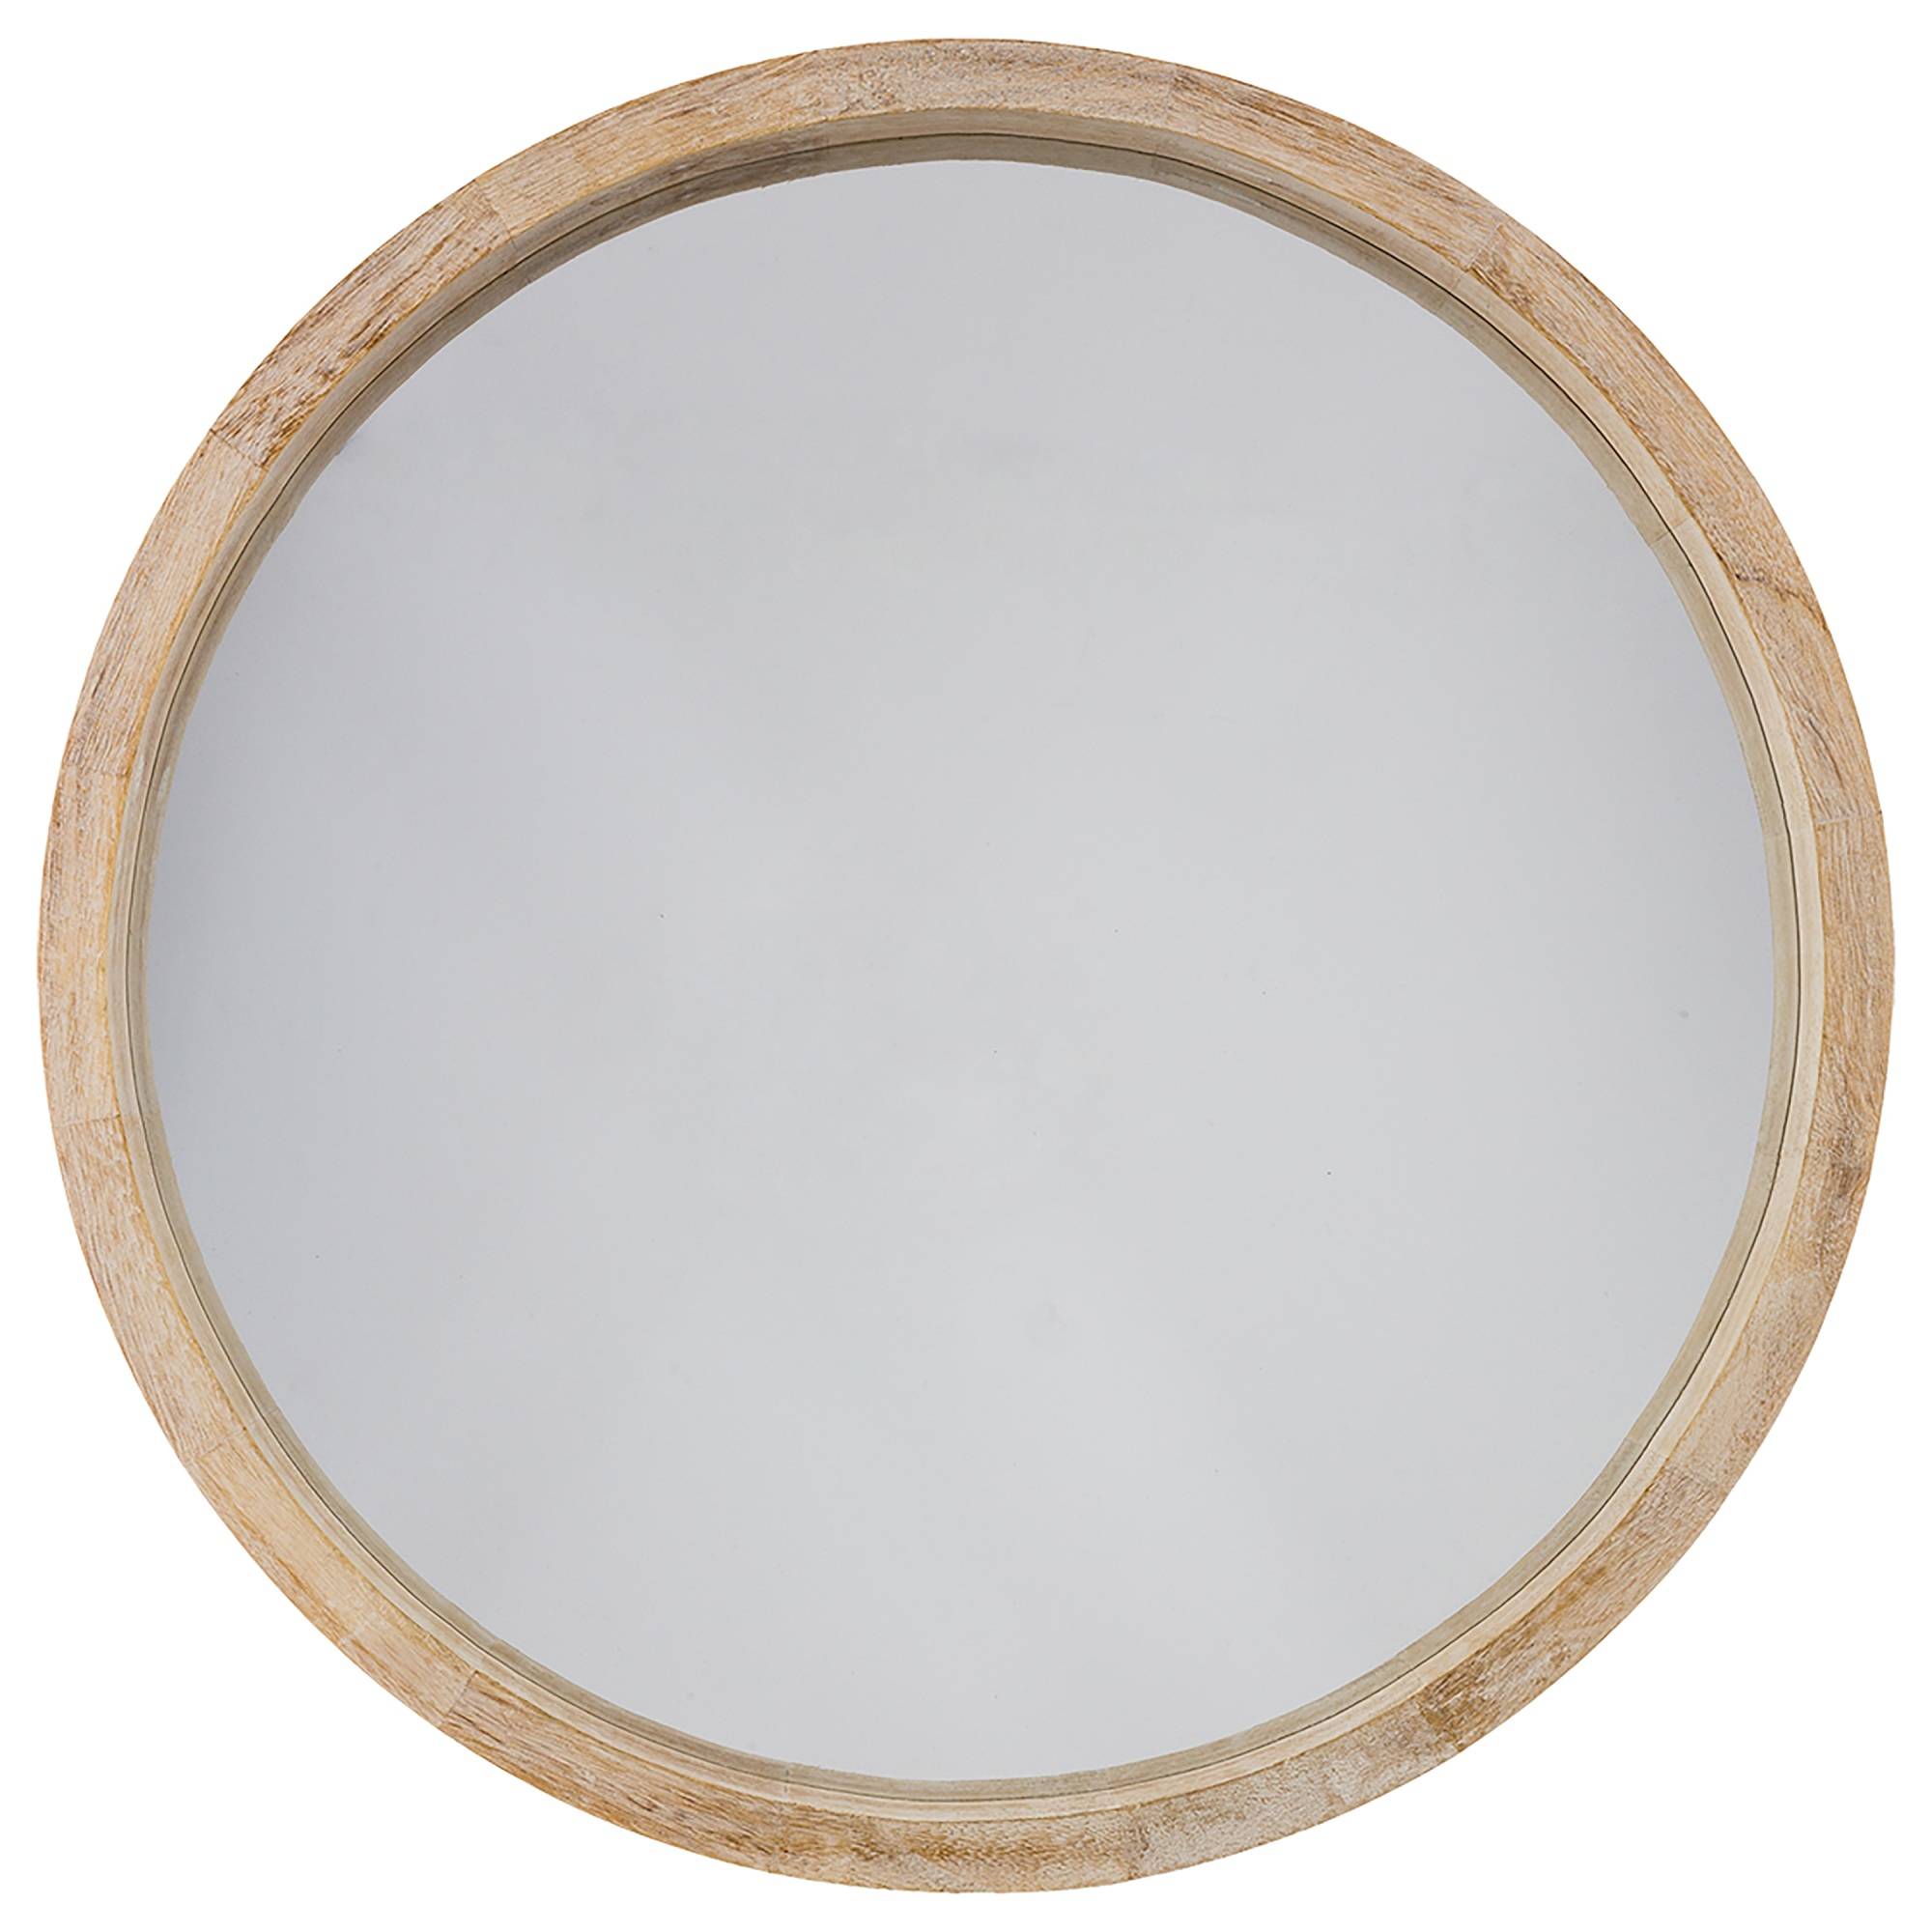 Runder Spiegel mit Holzrahmen, Ø 52 cm kaufen